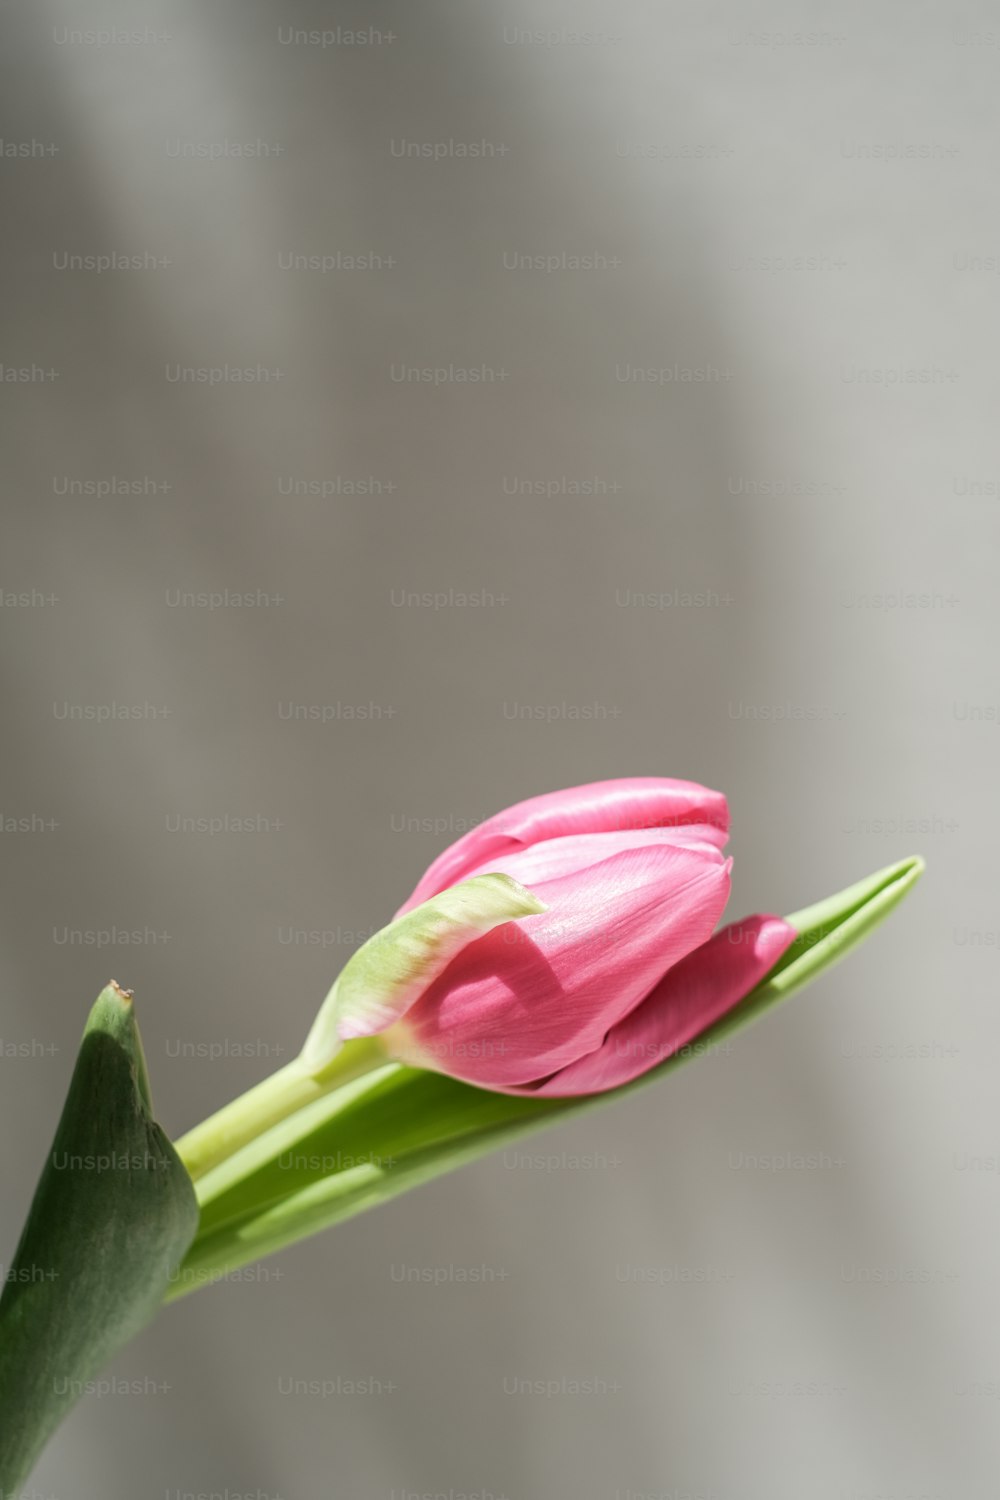 eine einzelne rosa Blume mit grünem Stiel